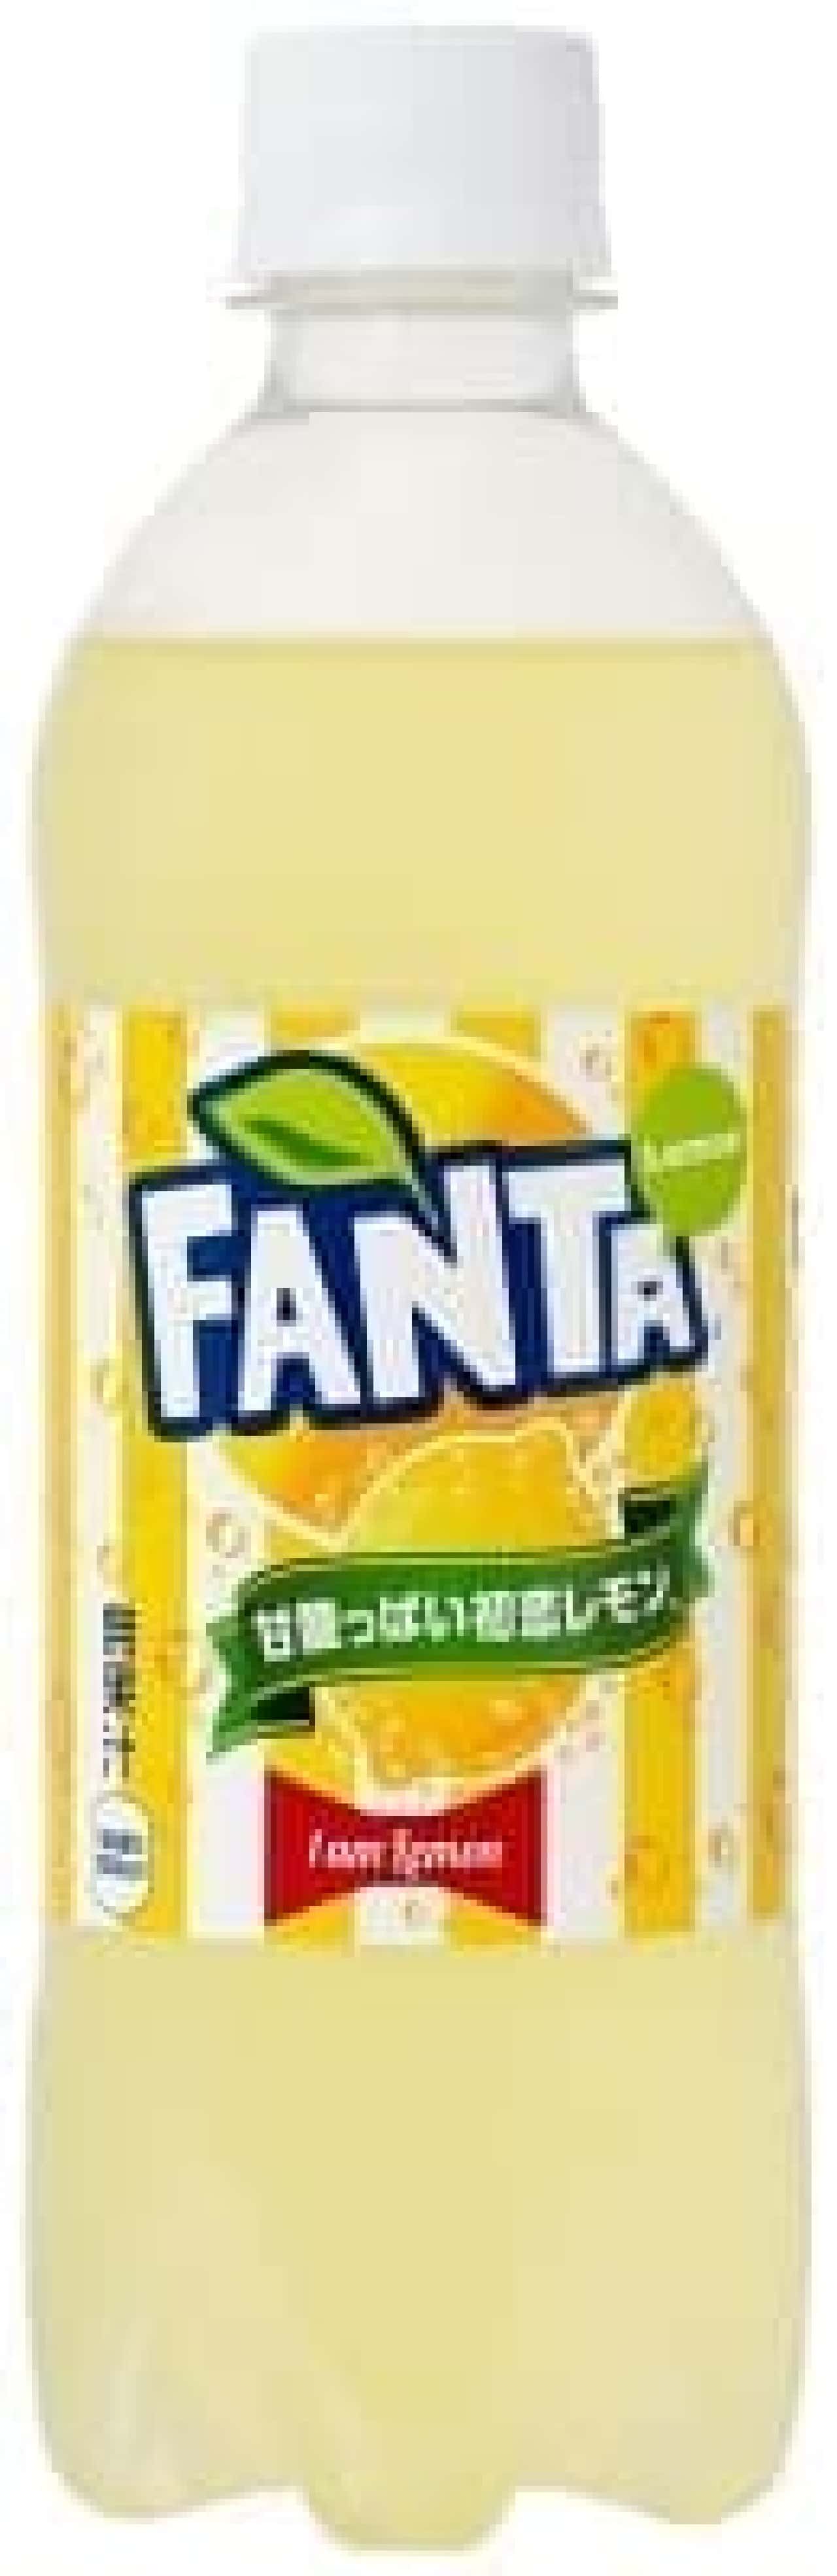 ファミリーマート「ファンタ 甘酸っぱい初恋レモン」